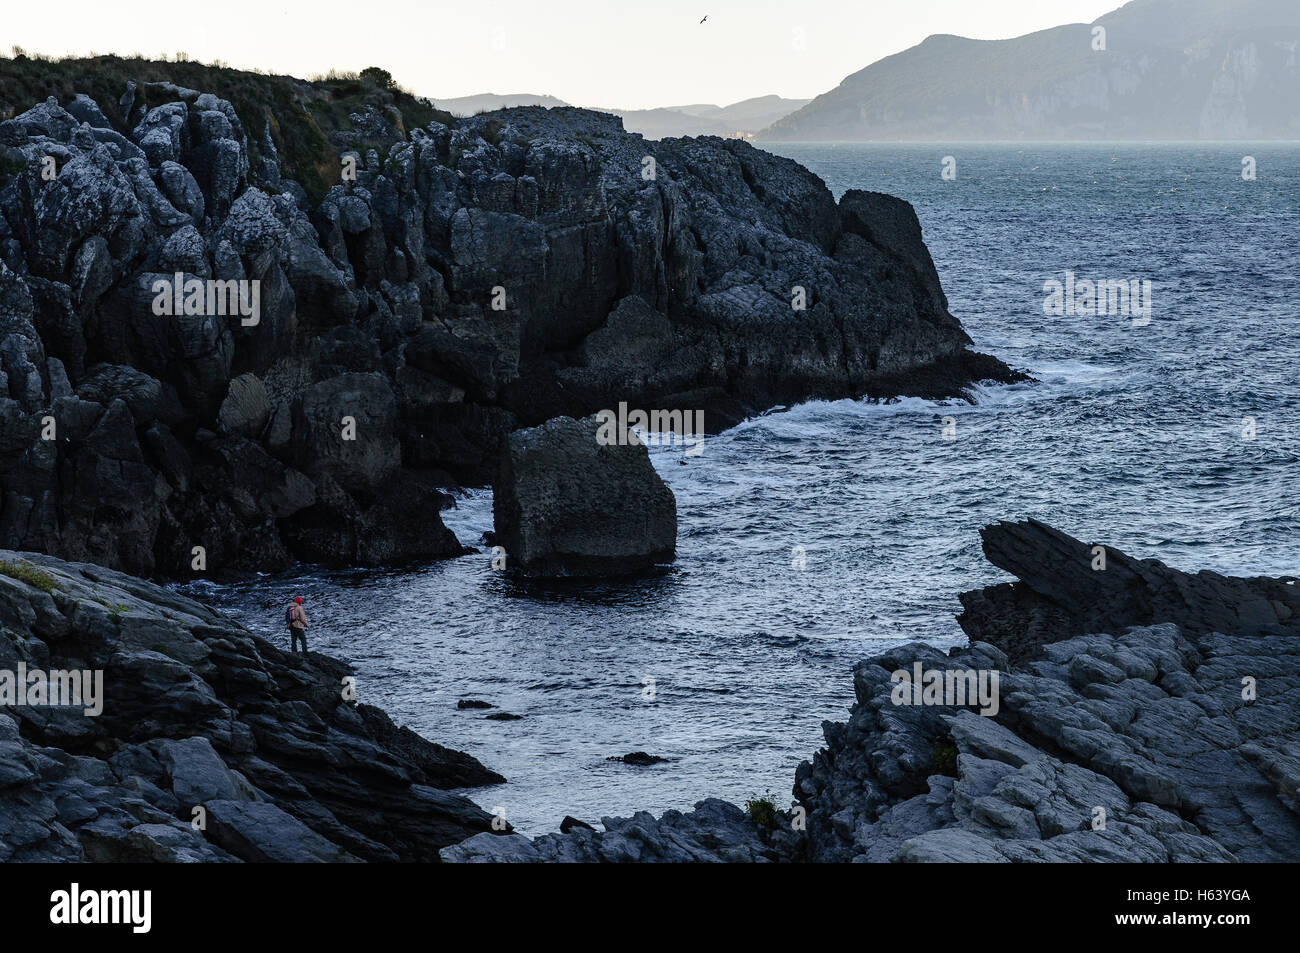 Uno dei pescatori con le loro aste on the rocks, il fondo del mare, costiera nel nord della Cantabria, SPAGNA Foto Stock